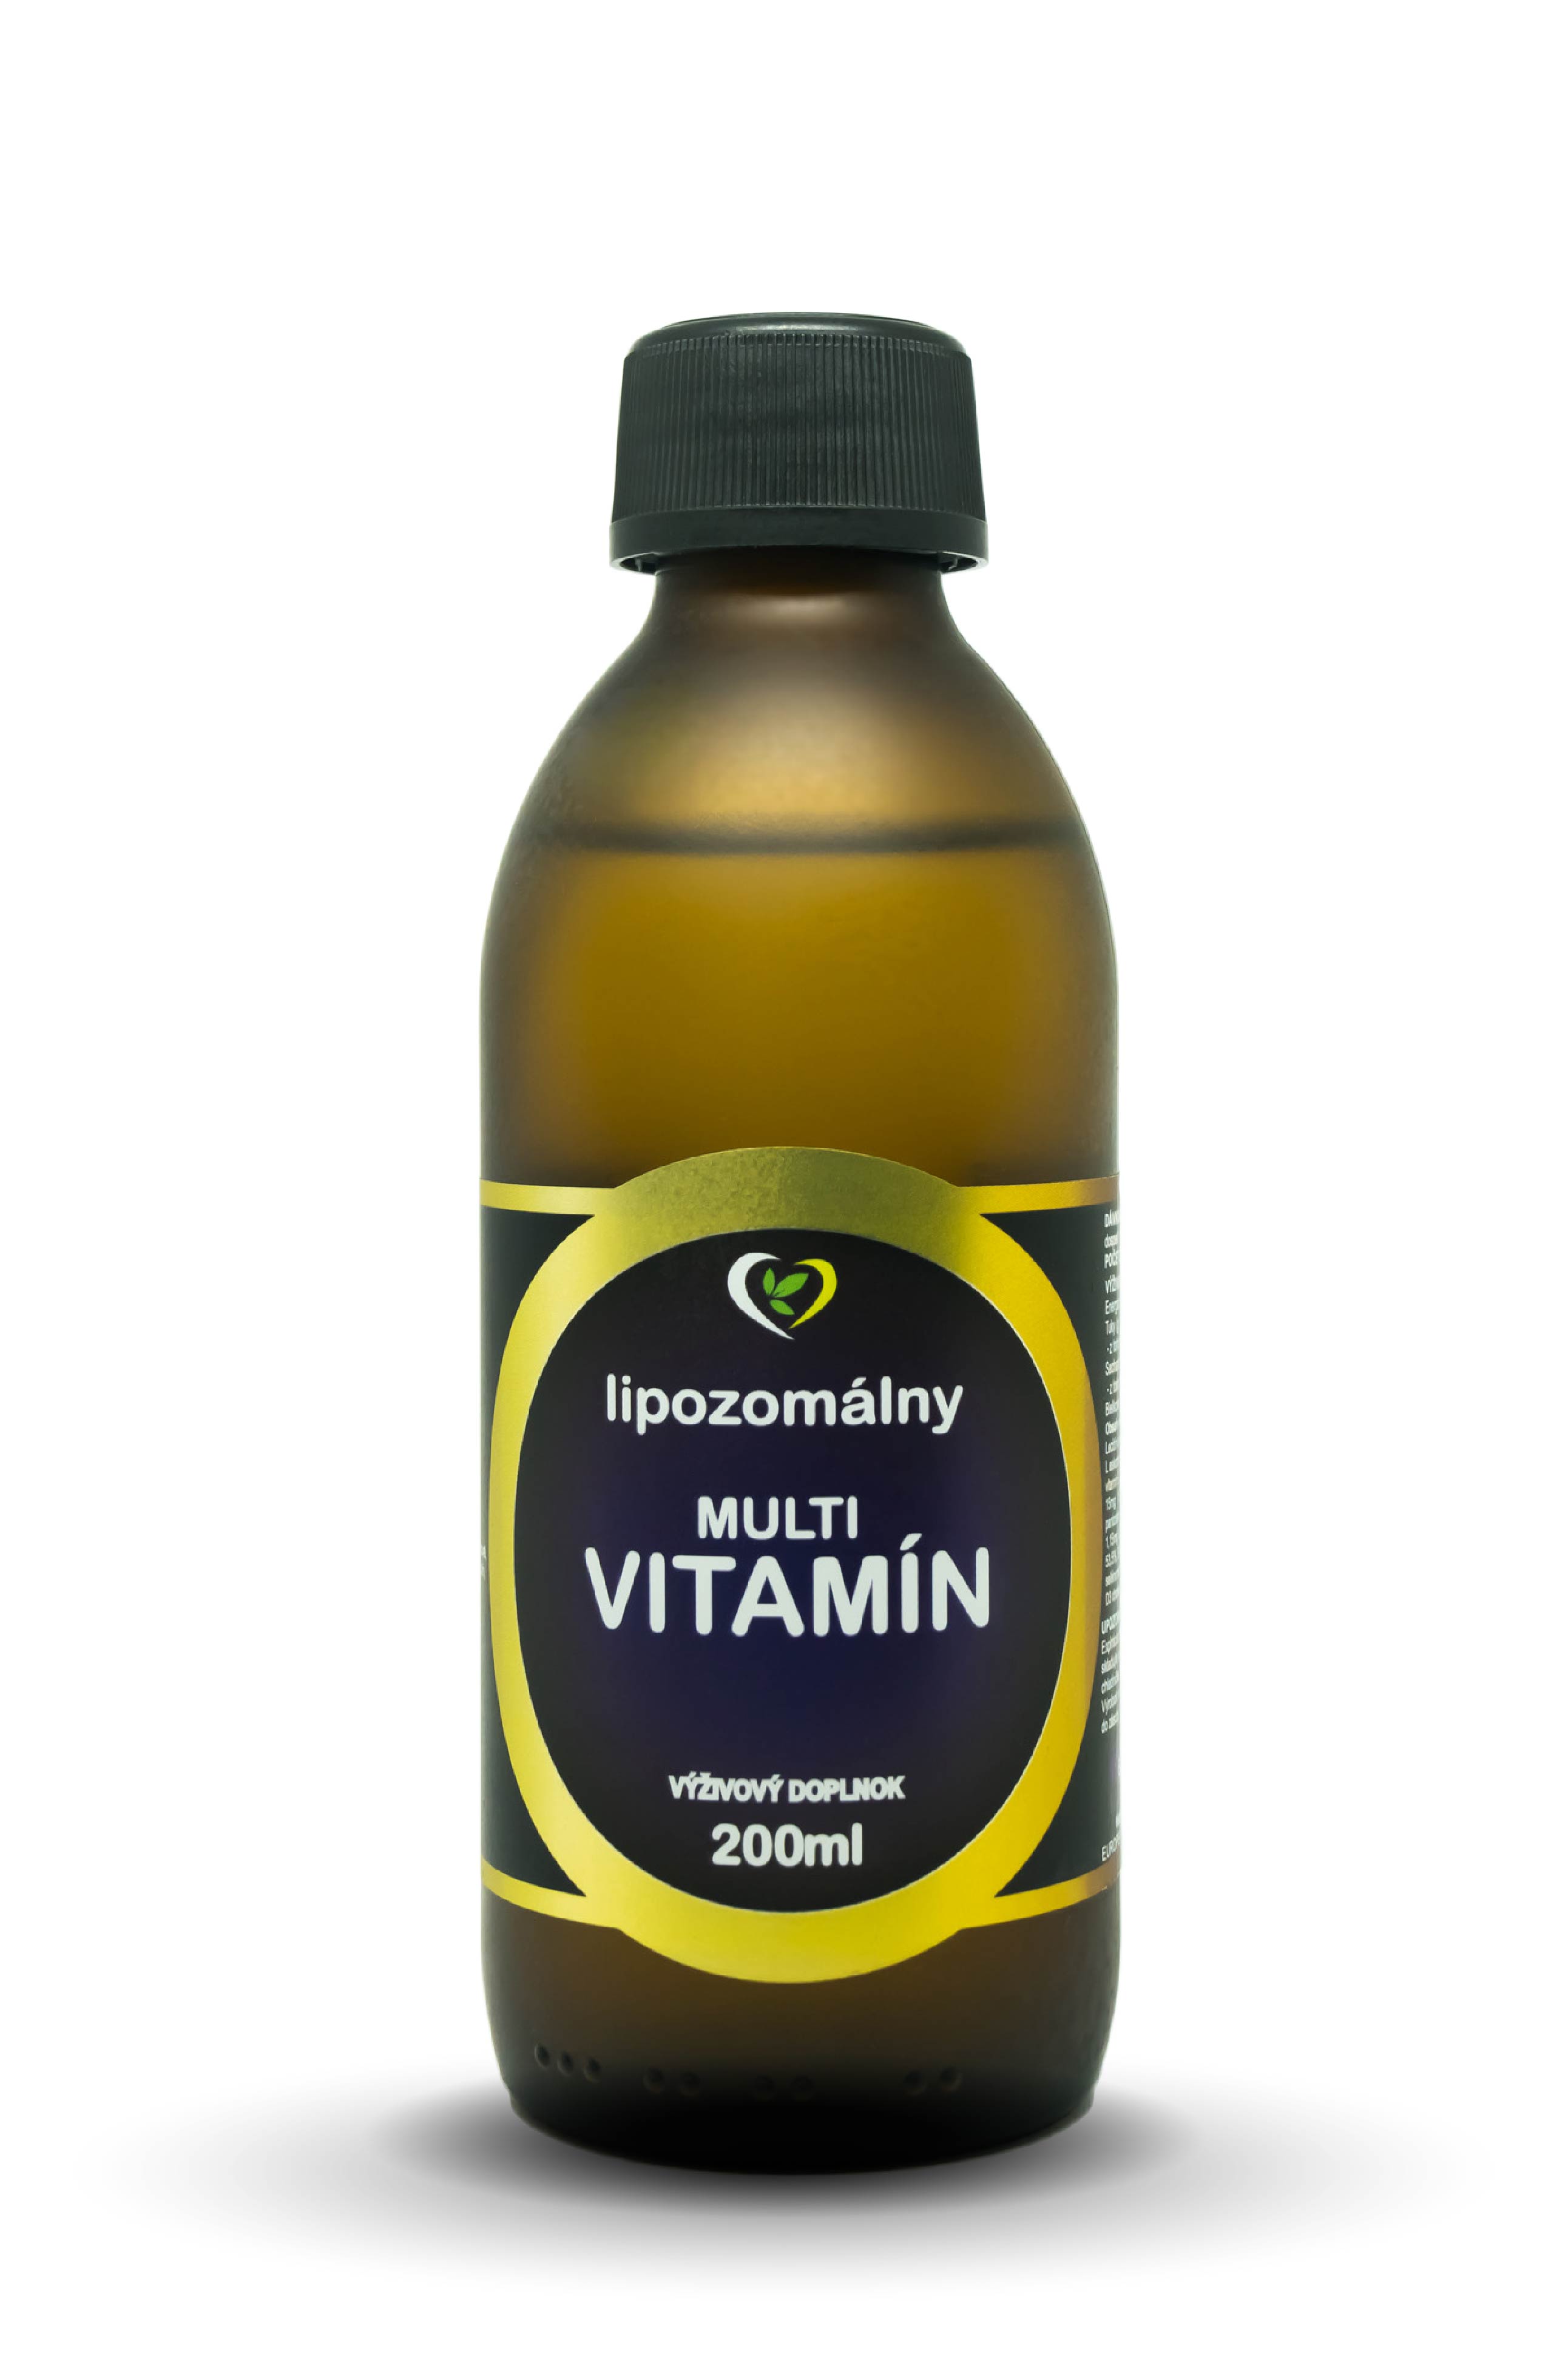 Moderný, lipozomálny vysokovstrebateľný multivitamín obsahujúci najdôležitejšiu kombináciu vitamínov, minerálov a stopových prvkov...